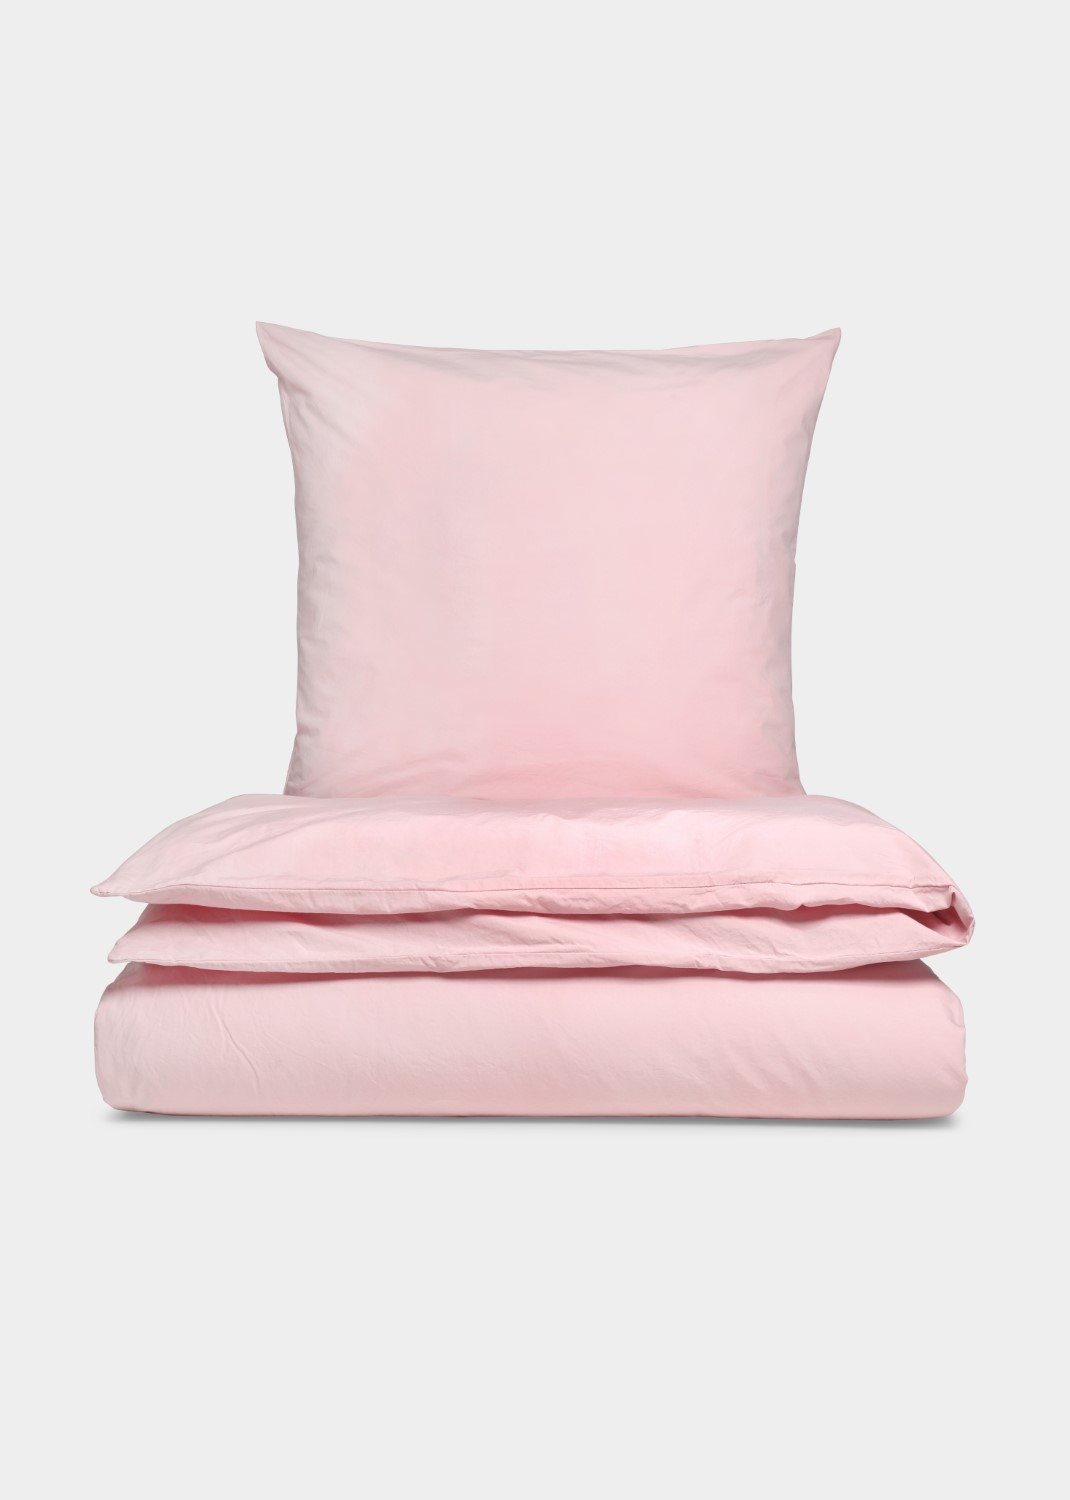 Sengesæt – Gentle Light Pink (140×200 cm)